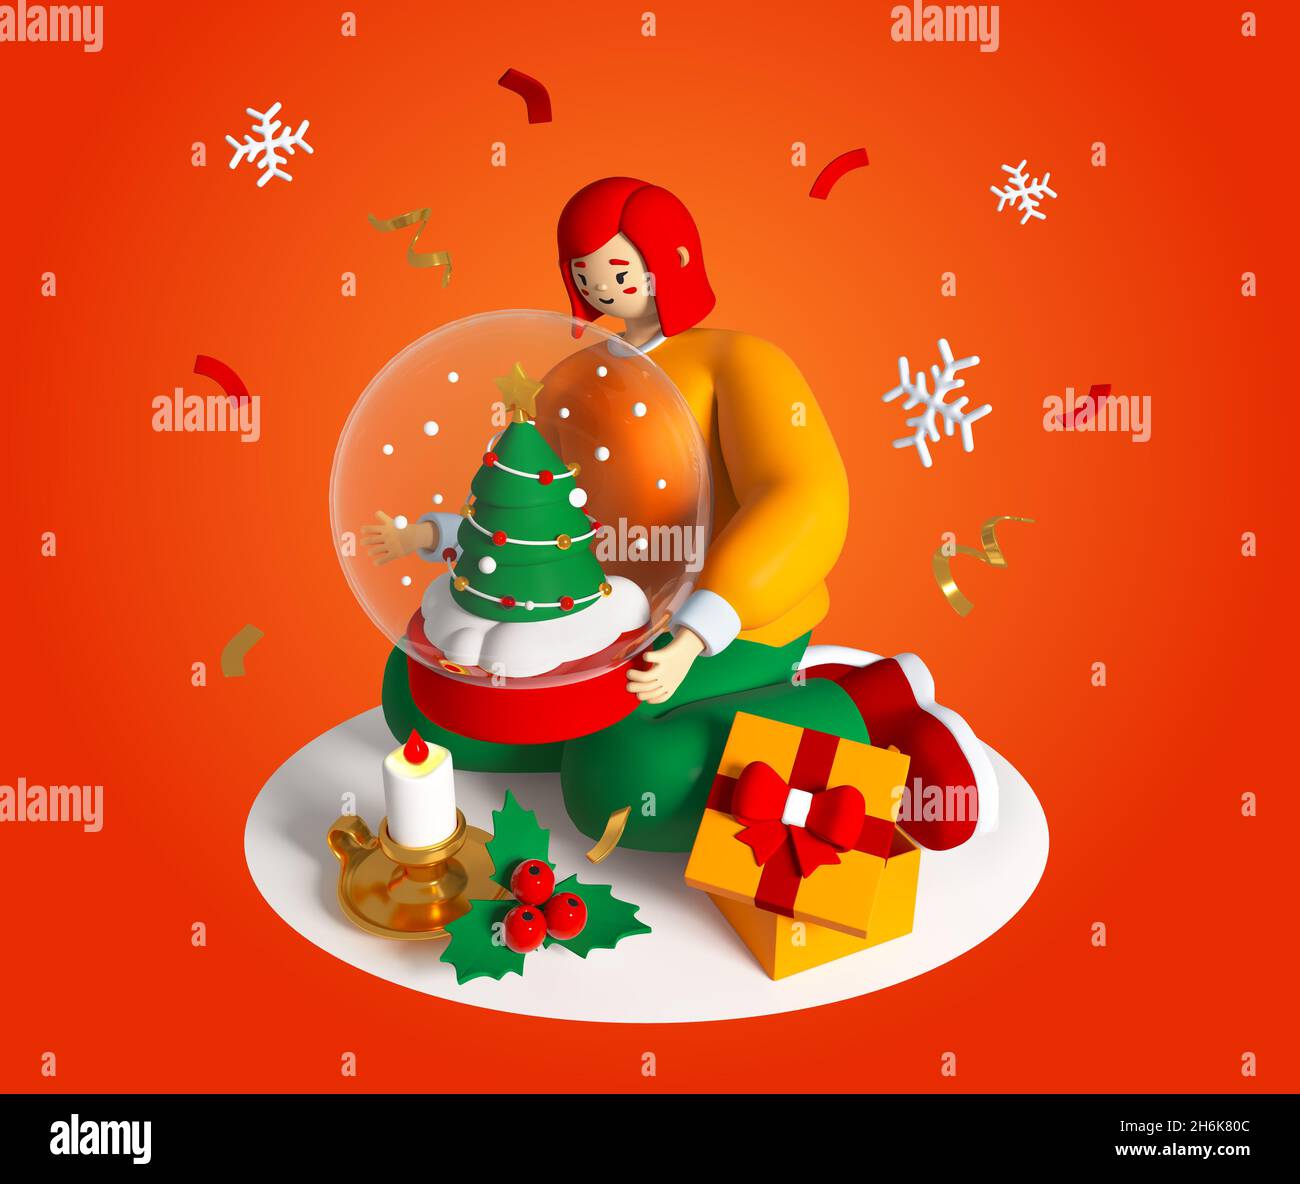 Apertura regali di Natale - colorata illustrazione in stile 3D con  personaggio cartoon. Ragazza allegra che tiene una palla di vetro con  l'albero di abete. Fiocchi di neve falli Foto stock -